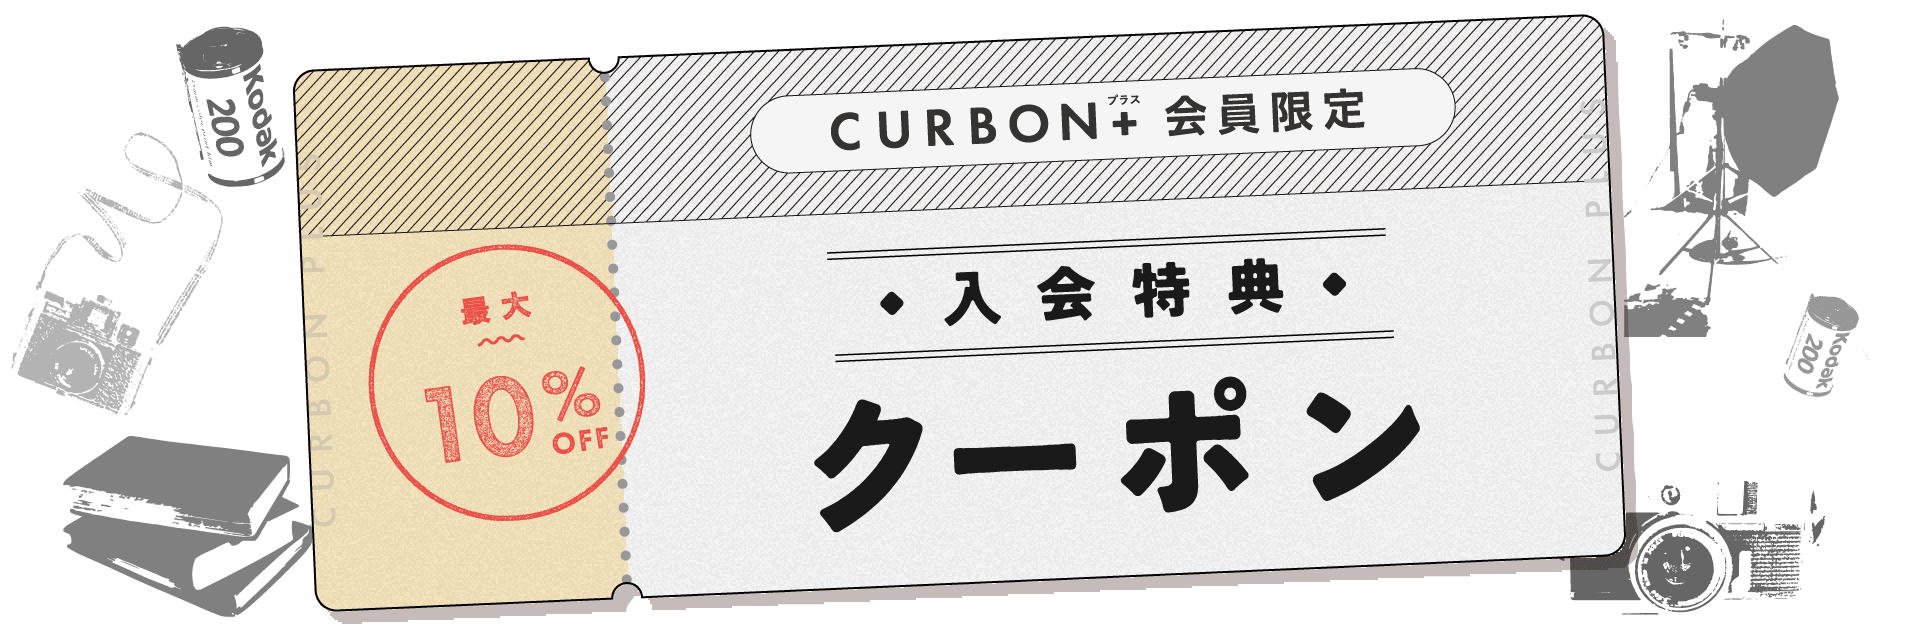 CURBON+ 会員限定 入会特典 クーポン